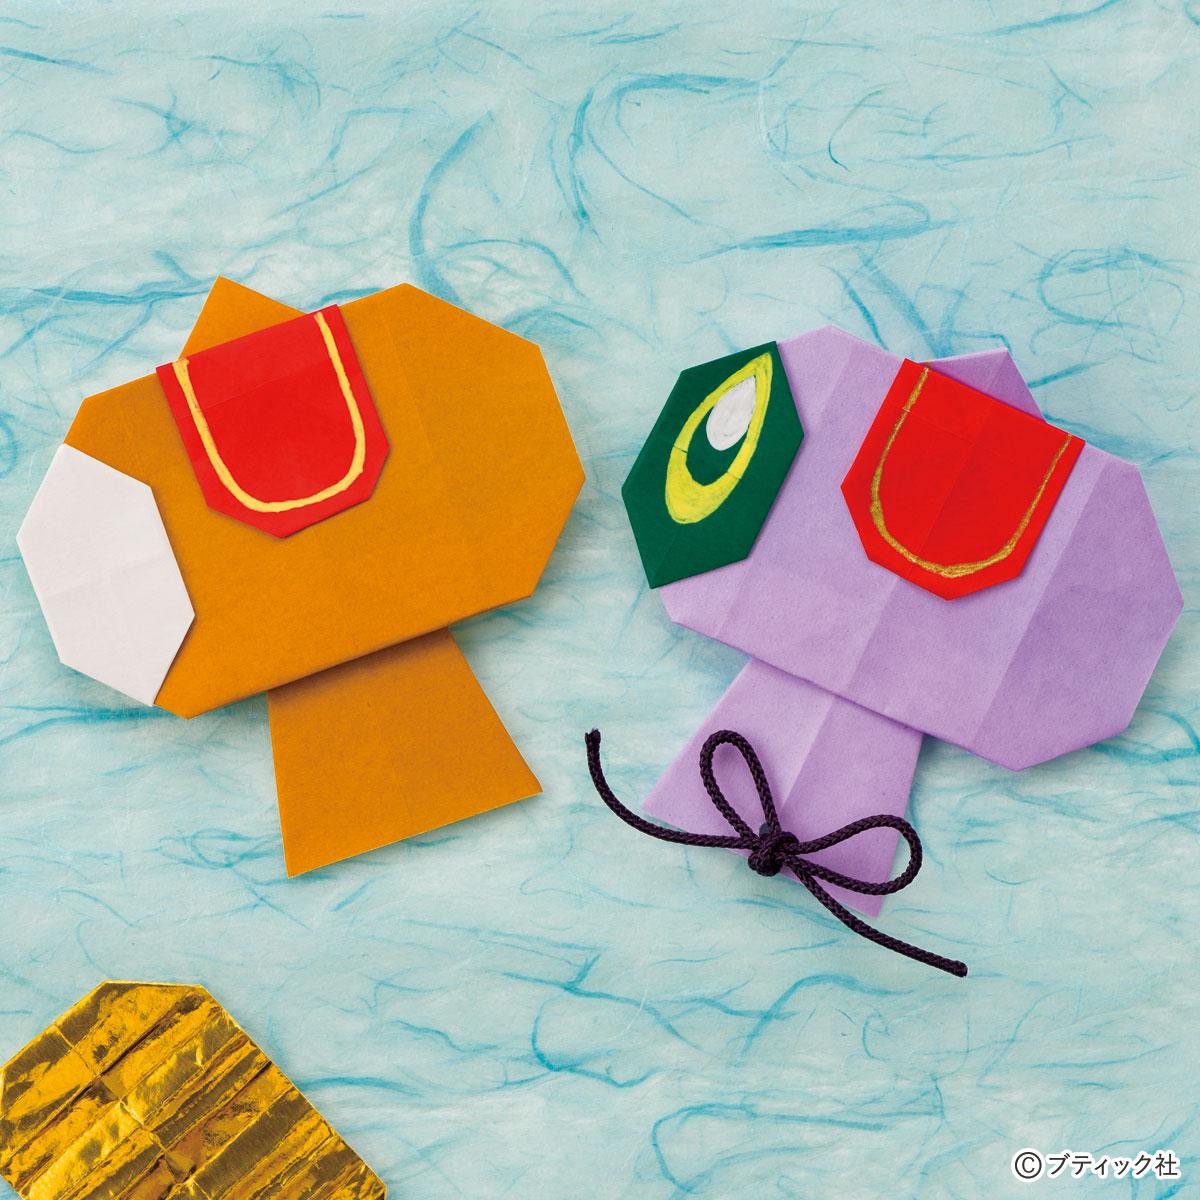 ねずみ だるま 折り紙 お正月の折り紙の折り方 簡単に子どもでも1月の飾りを作れます